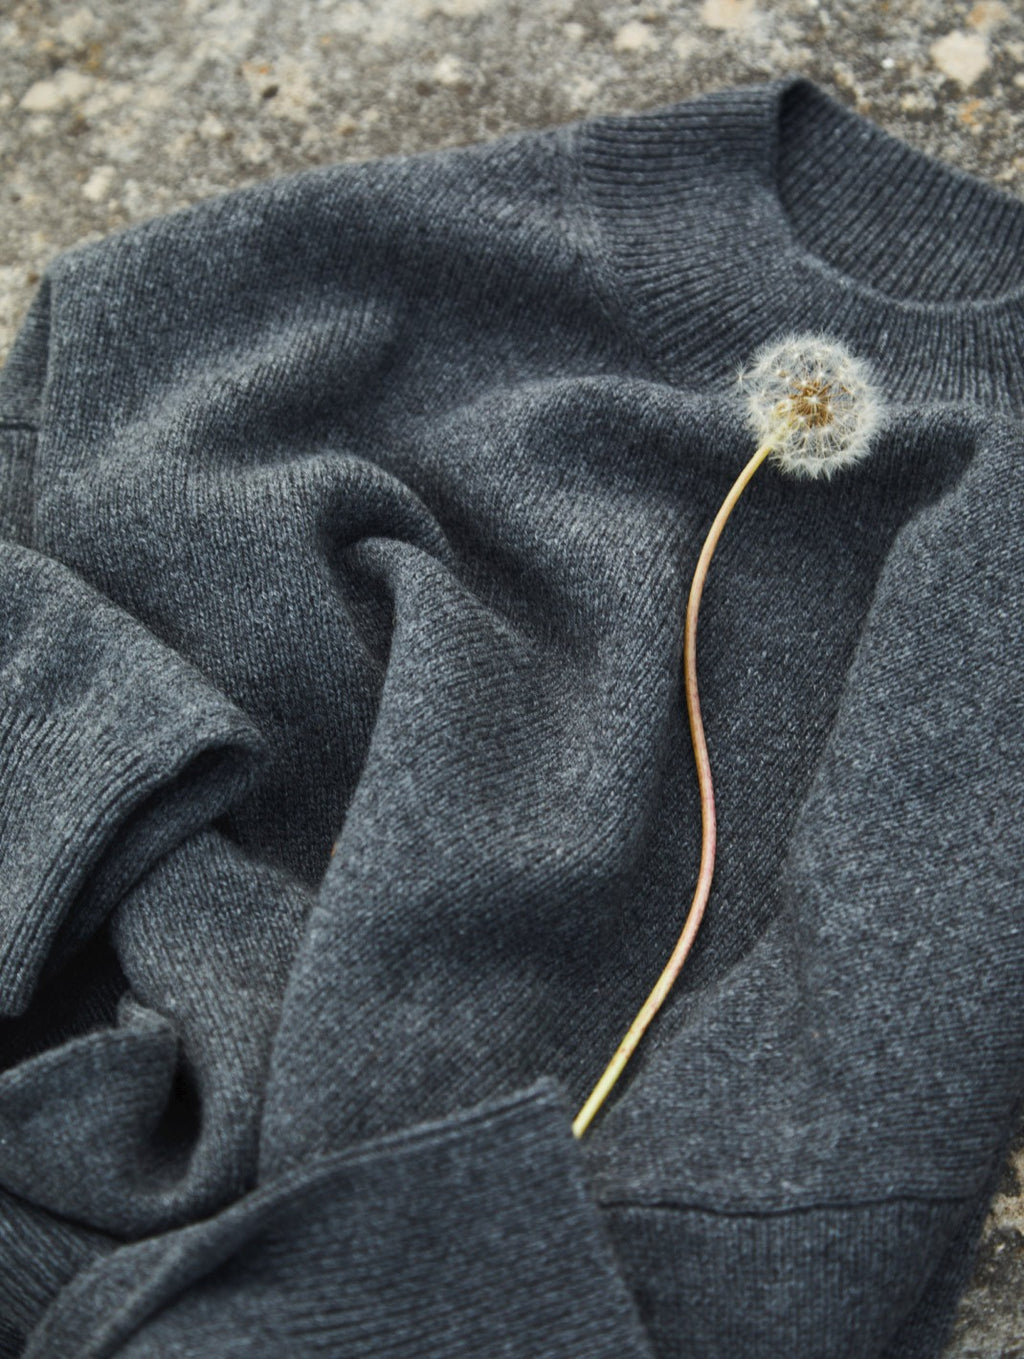 Dandelion on a folded sweater.